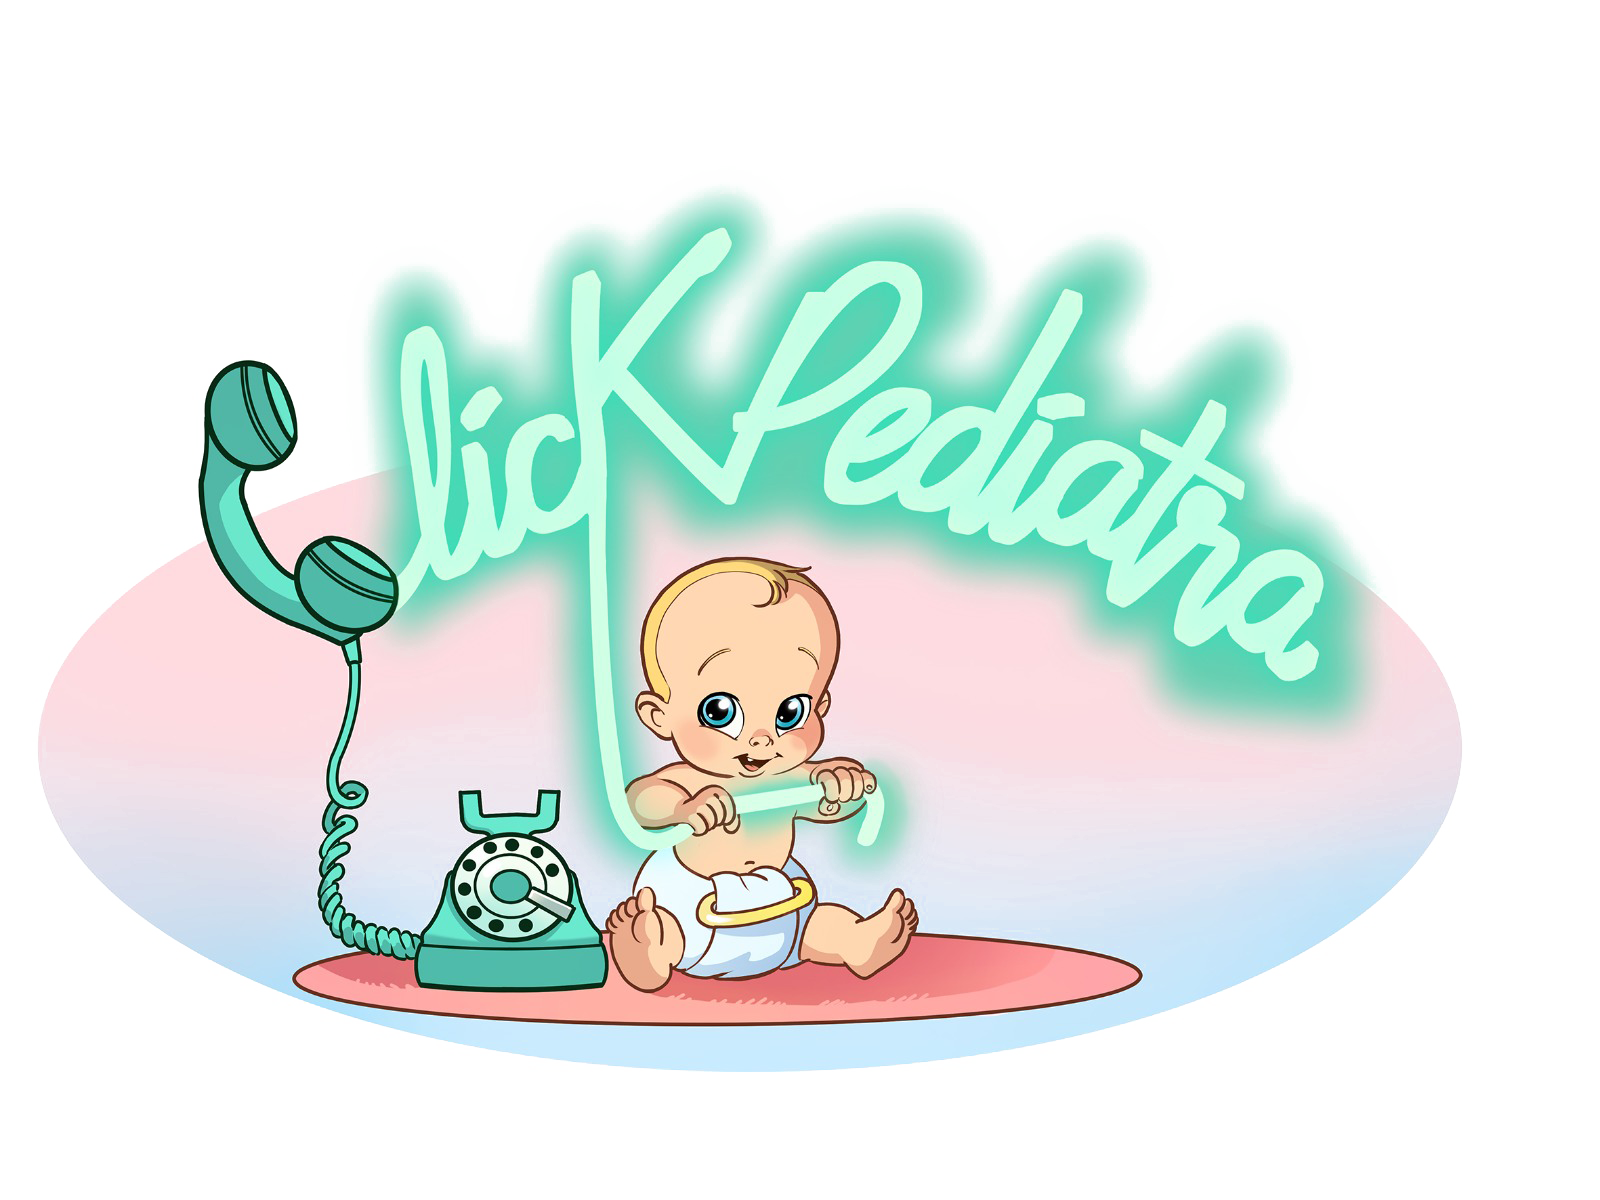 Click Pediatra